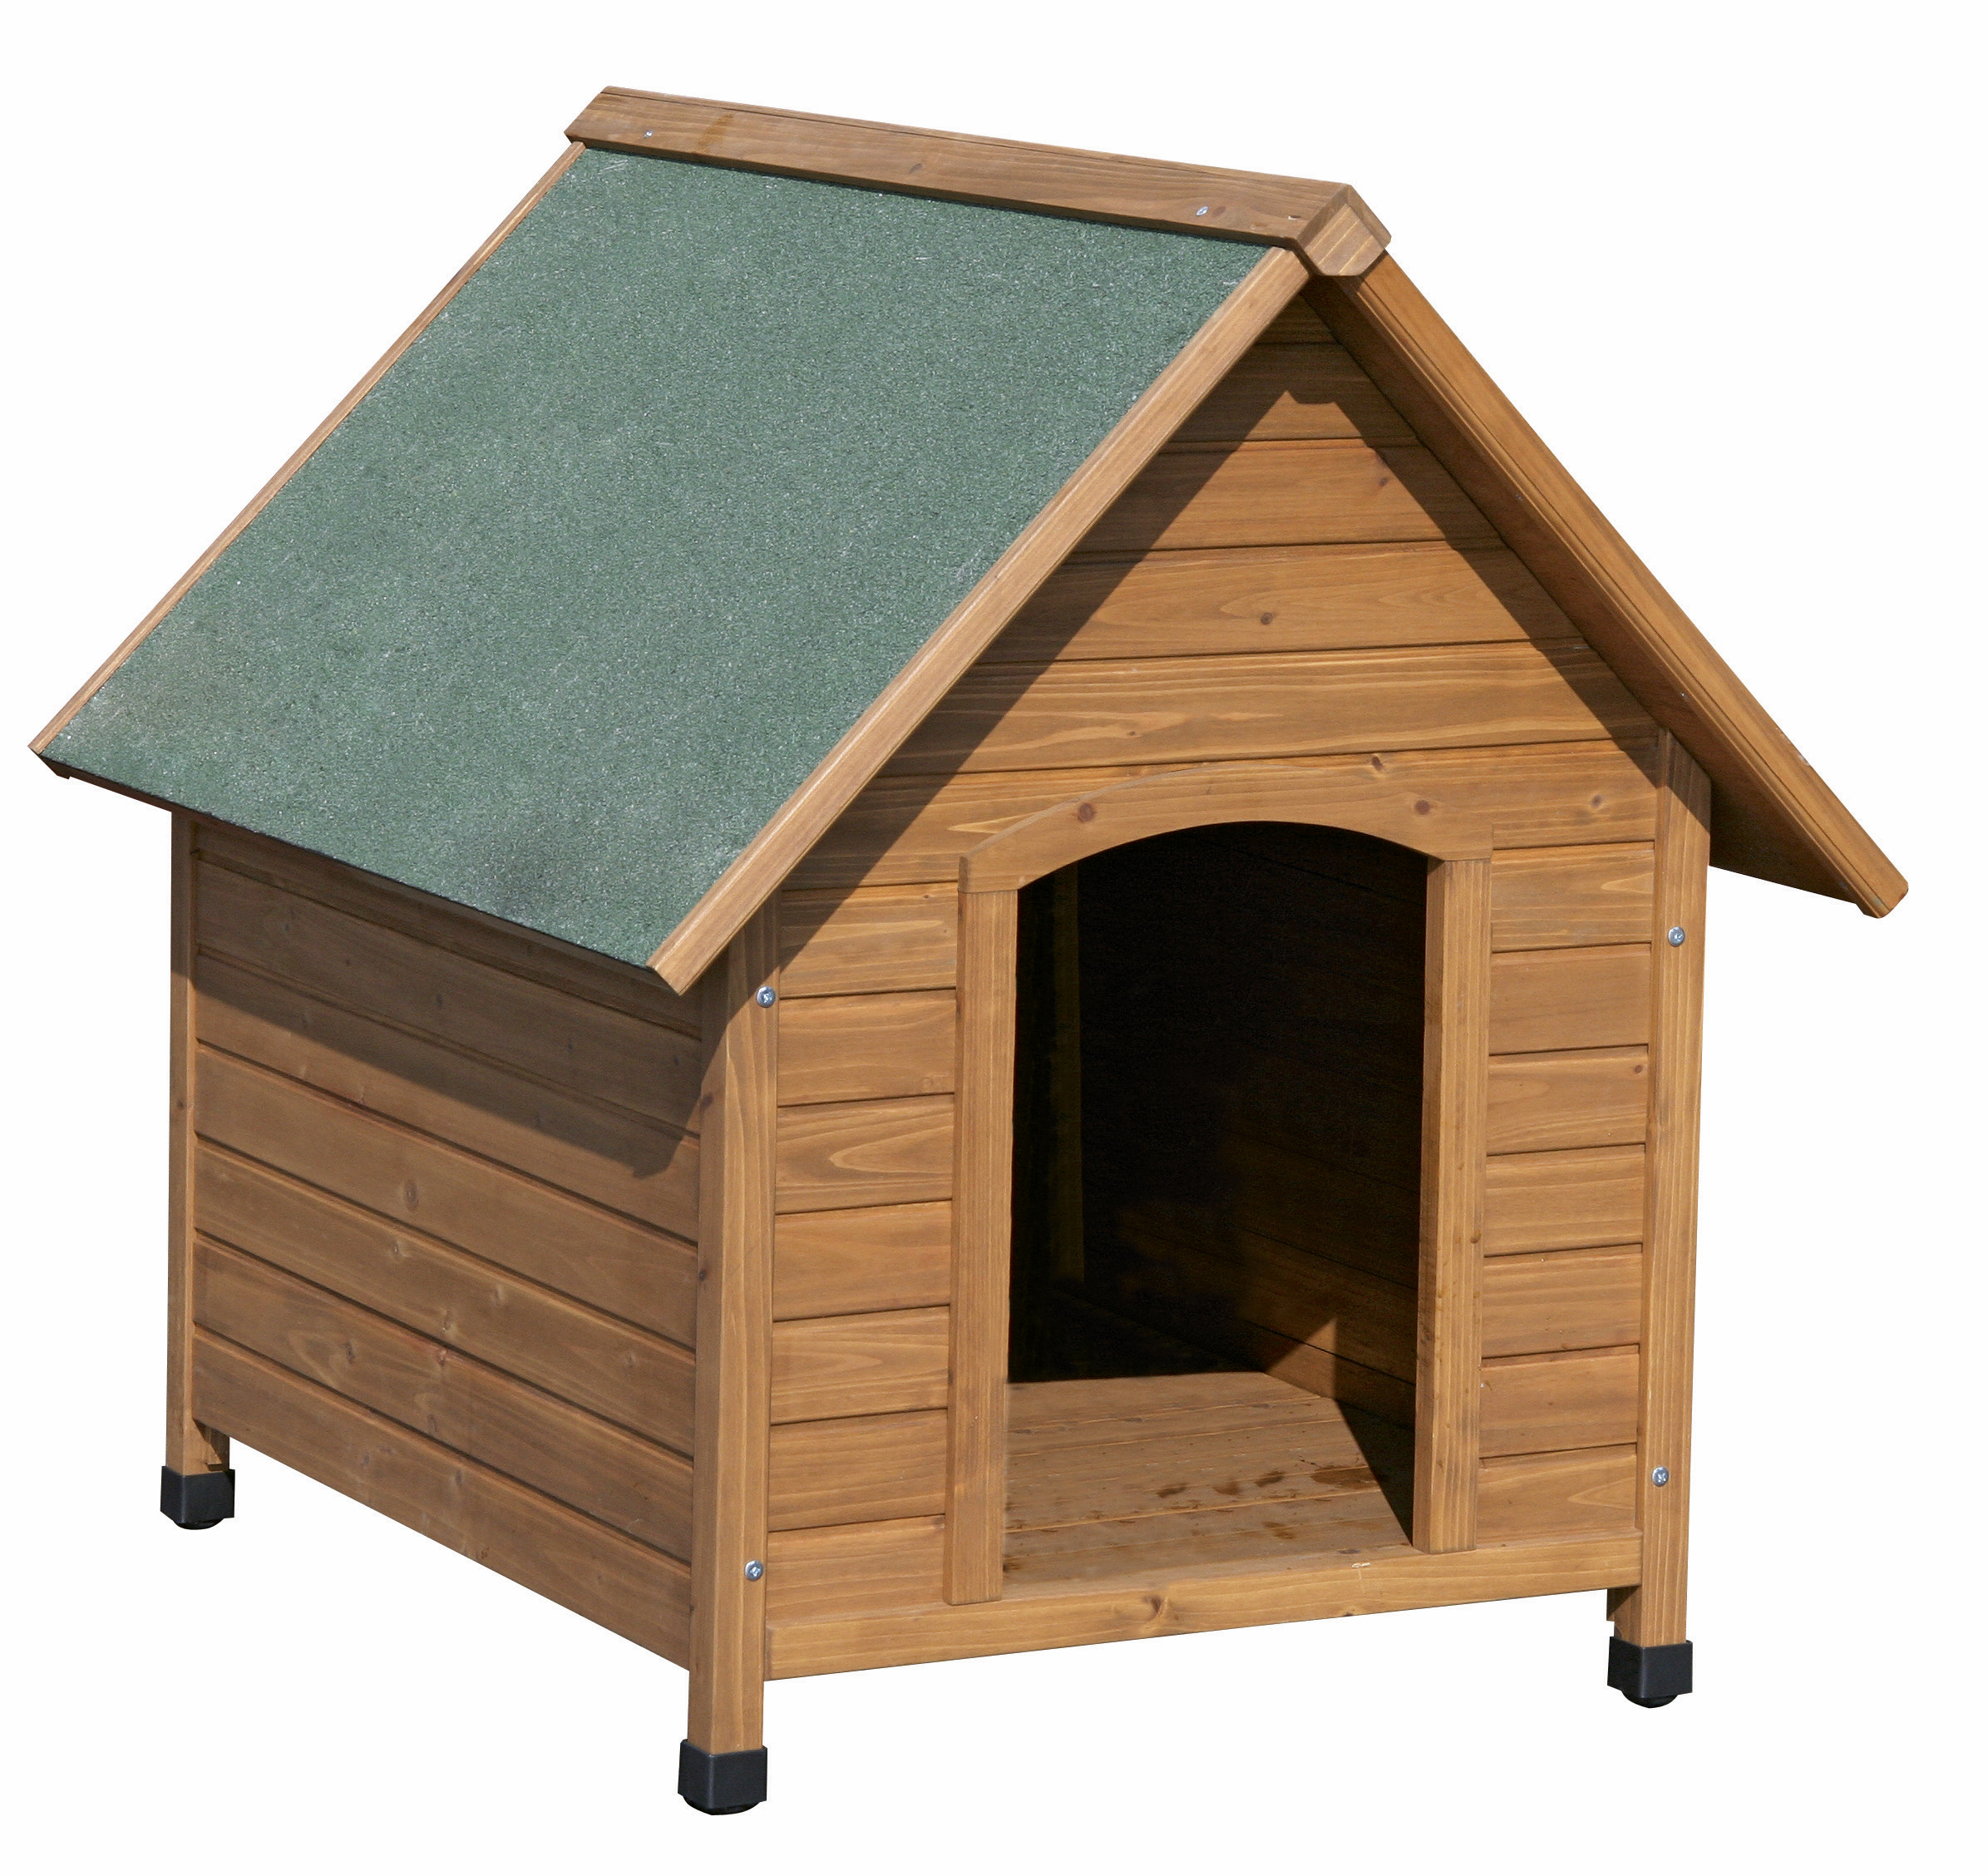 Cuccia per cani in legno da esterno: Cuccia Cani L 100